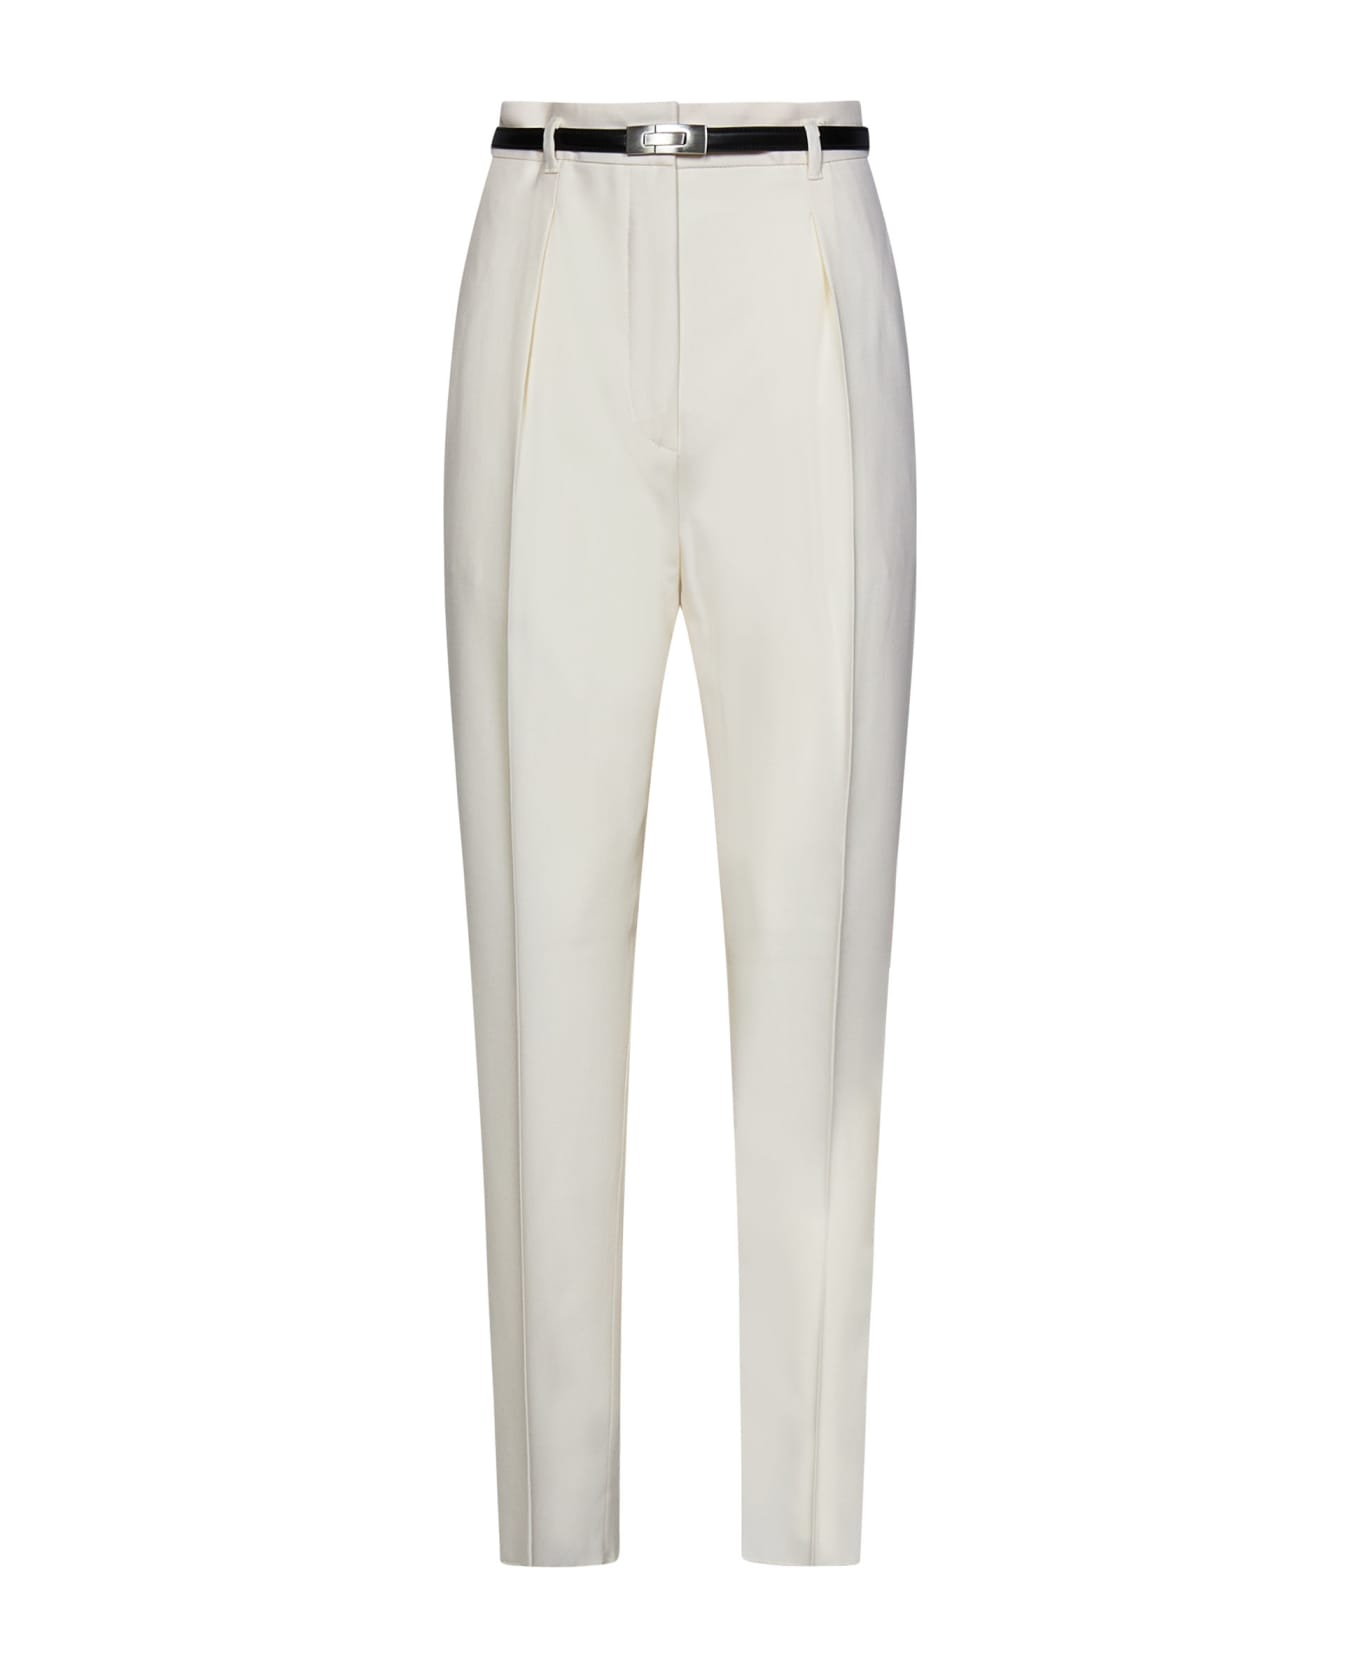 Max Mara Studio Briose Trousers - White